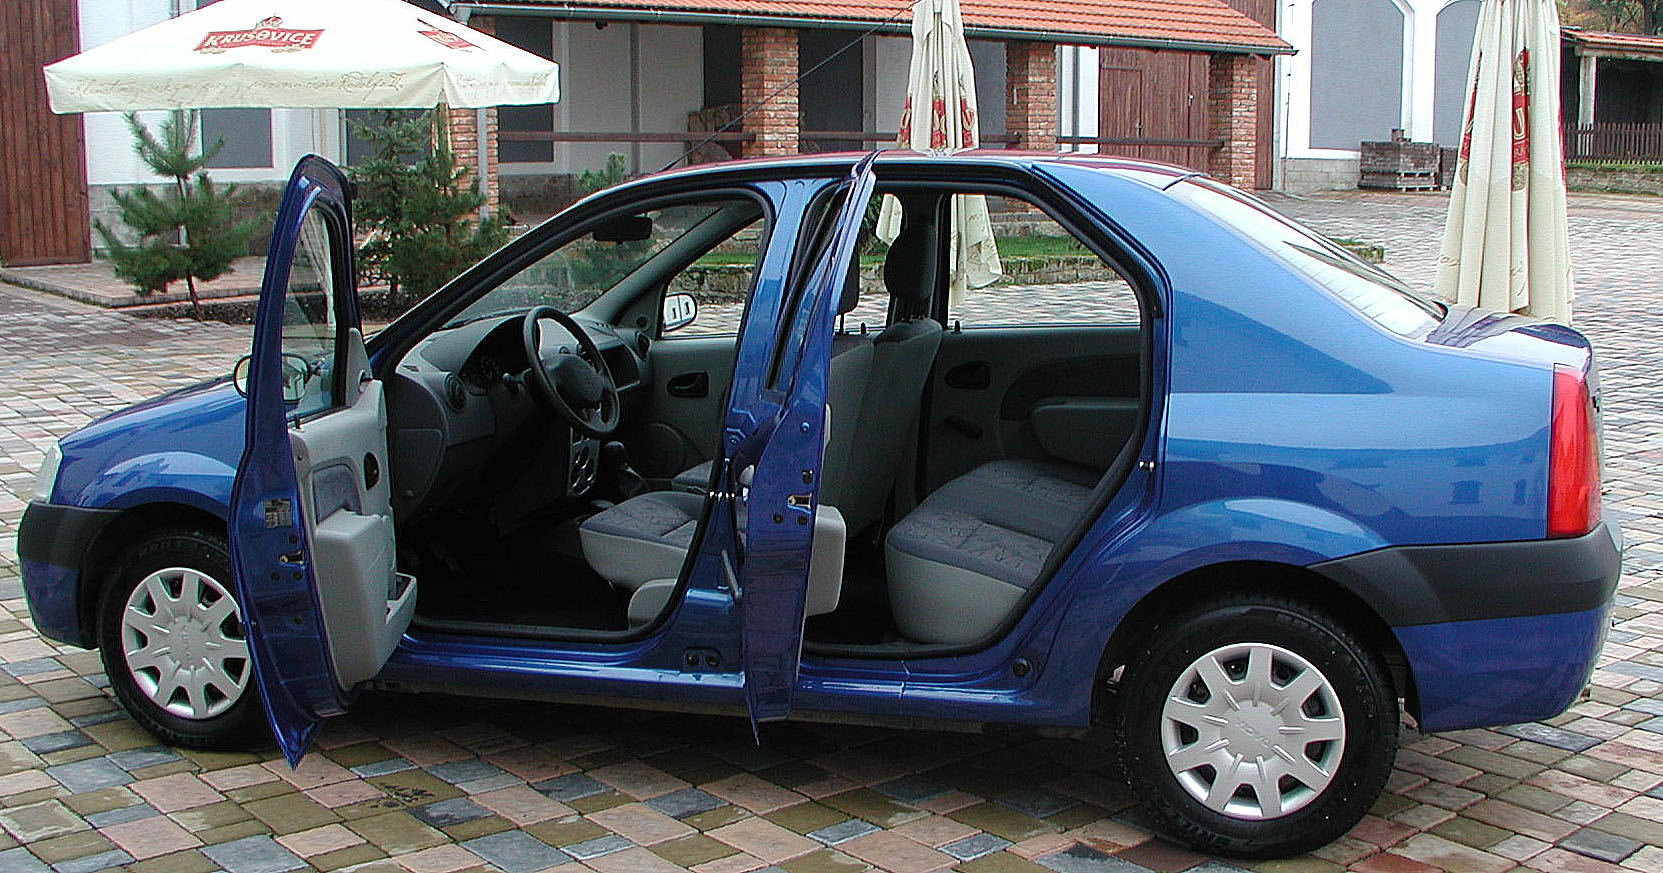 Nová Dacia – Logan s pěti plnohodnotnými sedadly a velkým zavazadlovým prostorem od 1. listopadu 2004 na náš trh